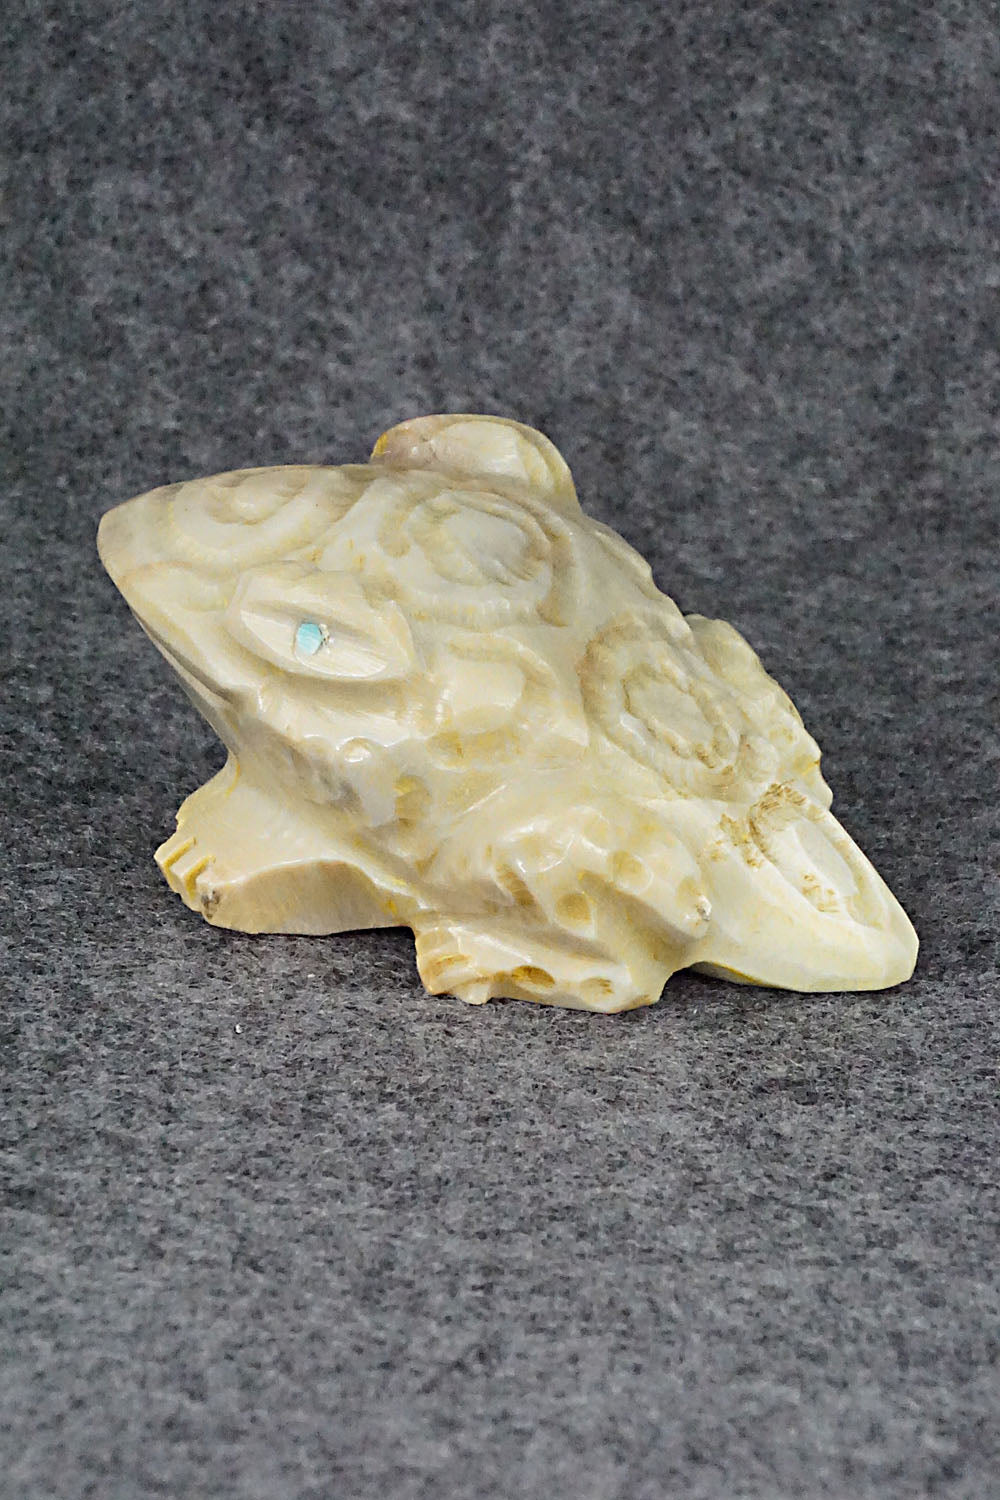 Frog Zuni Fetish Carving - Tony Mackel